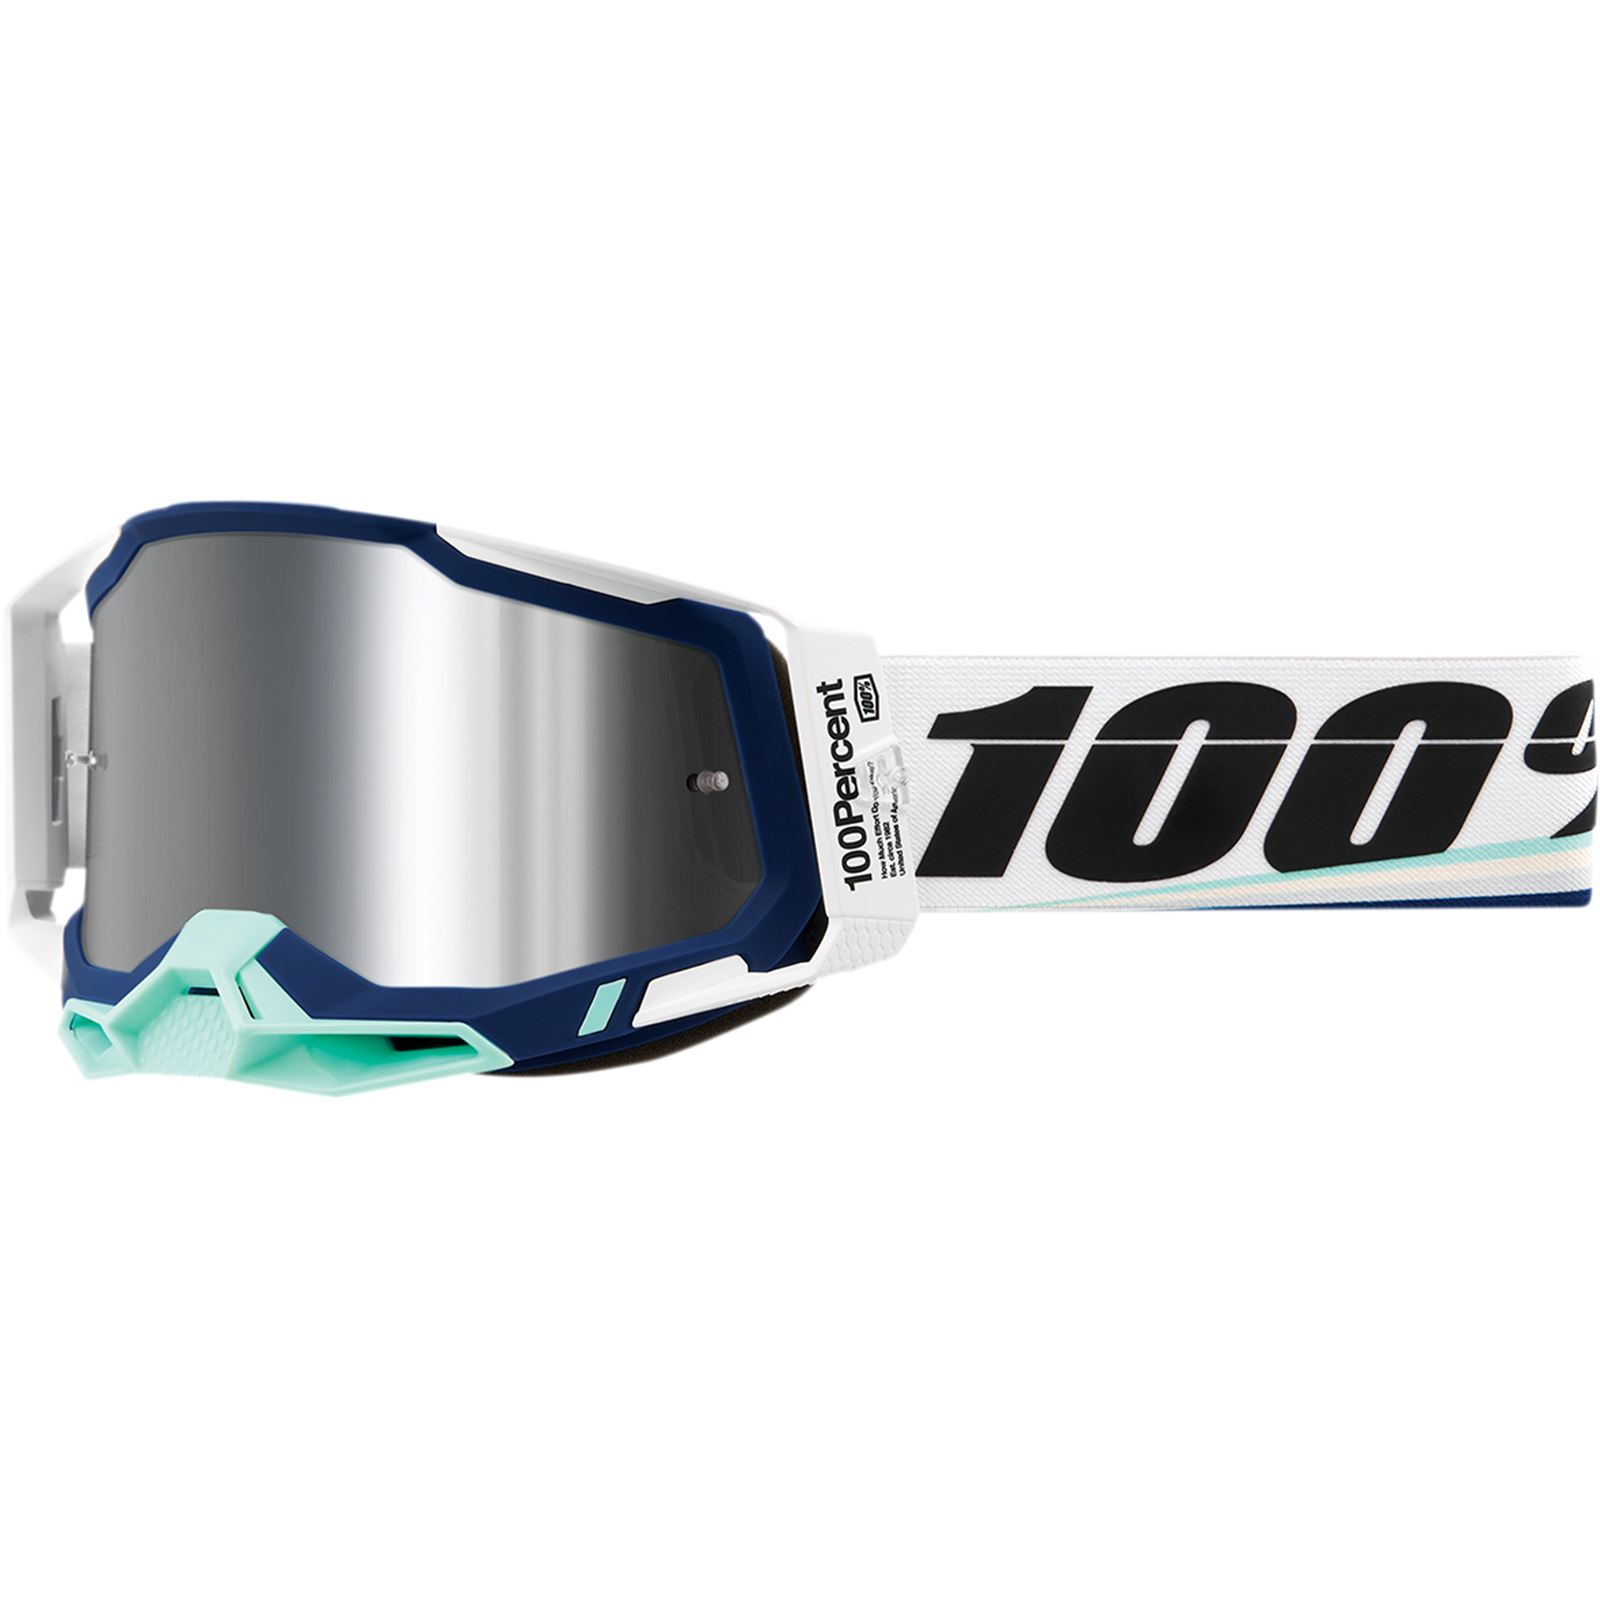 100% Racecraft 2 Goggles - Arsham - Silver Mirror